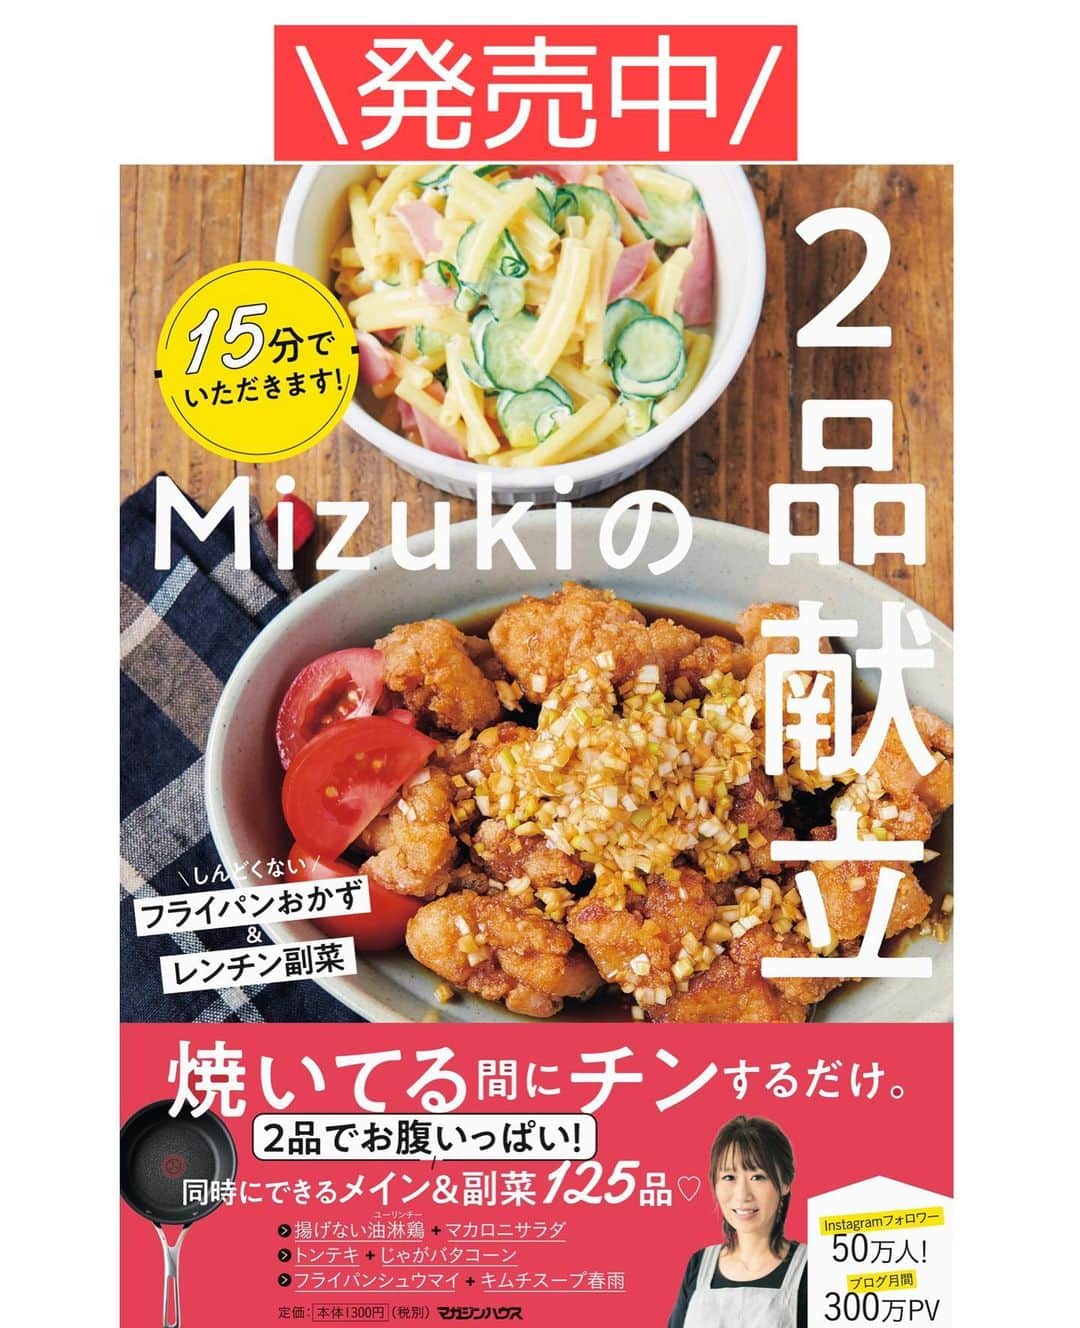 Mizuki【料理ブロガー・簡単レシピ】さんのインスタグラム写真 - (Mizuki【料理ブロガー・簡単レシピ】Instagram)「・﻿ 【#レシピ 】ーーーーーーーーーー﻿ 煮るだけ！手羽元と大根の甘辛煮﻿ ーーーーーーーーーーーーーーーー﻿ ﻿ ﻿ ﻿ おはようございます(*^^*)﻿ ﻿ 今日ご紹介させていただくのは﻿ \ 手羽元と大根の甘辛煮 /﻿ お鍋に材料全部入れて煮るだけの﻿ 超簡単レシピです(*´艸`)﻿ ﻿ 甘辛いに煮汁は鶏肉のうま味満点♩﻿ ジュワ〜っと染みた大根が﻿ 最高においしいですよー♡﻿ ﻿ 付きっきりにならなくていいから﻿ 他のことをしながら作れます♩﻿ よかったらお試し下さいね(*^^*)﻿ ﻿ ﻿ ﻿ ＿＿＿＿＿＿＿＿＿＿＿＿＿＿＿＿＿＿＿＿﻿ 【2人分】﻿ 手羽元...6本﻿ 大根...10cm﻿ 生姜...1/2かけ﻿ 水...400ml﻿ 醤油...大2.5﻿ 砂糖・酒...各大2﻿ ﻿ 1.大根は皮を剥いて2cm厚さのいちょう切りにする。生姜は薄切りにする。﻿ 2.鍋に全ての材料を入れて中火にかける。煮立ったら蓋を少しずらしてのせ、たまに混ぜながら20分煮る。﻿ 3.蓋を外し、混ぜながら5分程煮る。﻿ ￣￣￣￣￣￣￣￣￣￣￣￣￣￣￣￣￣￣￣￣﻿ ﻿ ﻿ ﻿ 《ポイント》﻿ ♦︎甘めの味付けです♩﻿ ♦︎時間があれば一度冷ますとより味が染み、色も付きます♩﻿ ♦︎生姜はチューブ(3cmくらい)で代用可♩﻿ ♦︎直径20cmの鍋を使用しています♩﻿ ﻿ ﻿ ﻿ ﻿ ﻿ ﻿ ﻿ ﻿ ➖➖➖🔔お知らせ🔔➖➖➖﻿ #2品献立 (マガジンハウス)が﻿ 一部楽天ブックスに入荷しています✨﻿ 長らく欠品が続き申し訳ございません(泣)﻿ ﻿ #ホットケーキミックスのお菓子 ﻿ (KADOKAWA)﻿ Amazonに入荷致しました🙇‍♀️﻿ ￣￣￣￣￣￣￣￣￣￣￣￣￣￣￣￣﻿ ﻿ ﻿ ﻿ ﻿ 📕重版しました！📕﻿ ありがとうございます😭﻿ 【ラクしておいしい！#1品晩ごはん 】﻿ ￣￣￣￣￣￣￣￣￣￣￣￣￣￣￣￣￣﻿ 私たちだってヘトヘトな日がある•••﻿ 毎日何品も作っていられない•••﻿ もうごはんに悩みたくない😢﻿ そんな時、1品ごはんはいかがでしょう？﻿ というご提案です✨﻿ ﻿ 【1品ごはん】は﻿ 副菜いらずで全てがシンプル！﻿ ￣￣￣￣￣￣￣￣￣￣￣￣￣￣￣￣￣￣﻿ 一品つくるだけでいいから﻿ 献立を考えなくてよし！﻿ ￣￣￣￣￣￣￣￣￣￣￣￣￣￣￣￣￣￣﻿ 悩まない、疲れない、﻿ 気力や時間がなくてもなんとかなる！﻿ ￣￣￣￣￣￣￣￣￣￣￣￣￣￣￣￣￣￣﻿ そんな頼りになる﻿ 便利なお助けごはんです☺️💕﻿ (ハイライトに🔗貼っています✨)﻿ ￣￣￣￣￣￣￣￣￣￣￣￣￣￣￣￣￣﻿ ﻿ ﻿ ﻿ ﻿ ﻿ ⭐️発売中⭐️﻿ ＿＿＿＿＿＿＿＿＿＿＿＿＿＿＿＿＿＿﻿ しんどくない献立、考えました♩﻿ \15分でいただきます/﻿ 📕Mizukiの2品献立 📕﻿ ﻿ 和食をもっとカジュアルに♩﻿ \毎日のごはんがラクになる/﻿ 📘#Mizukiの今どき和食 📘﻿ ﻿ ホケミレシピの決定版♩﻿ \はじめてでも失敗しない/﻿ 📙ホットケーキミックスのお菓子 📙﻿ ﻿ NHKまる得マガジンテキスト☆﻿ ホットケーキミックスで﻿ 📗絶品おやつ&意外なランチ📗﻿ ￣￣￣￣￣￣￣￣￣￣￣￣￣￣￣￣￣￣﻿ ﻿ ﻿ ﻿ ＿＿＿＿＿＿＿＿＿＿＿＿＿＿＿＿＿＿﻿ レシピを作って下さった際や﻿ レシピ本についてのご投稿には﻿ タグ付け( @mizuki_31cafe )して﻿ お知らせいただけると嬉しいです😊💕﻿ ￣￣￣￣￣￣￣￣￣￣￣￣￣￣￣￣￣￣﻿ ﻿ ﻿ ﻿ ﻿ #手羽元#大根#煮物#甘辛#Mizuki#簡単レシピ#時短レシピ#節約レシピ#料理#フーディーテーブル#マカロニメイト#おうちごはん#デリスタグラマー#料理好きな人と繋がりたい#おうちごはんlover#写真好きな人と繋がりたい#foodpic#cooking#recipe#lin_stagrammer#foodporn#yummy#f52grams#手羽元と大根の甘辛煮m」1月21日 7時24分 - mizuki_31cafe